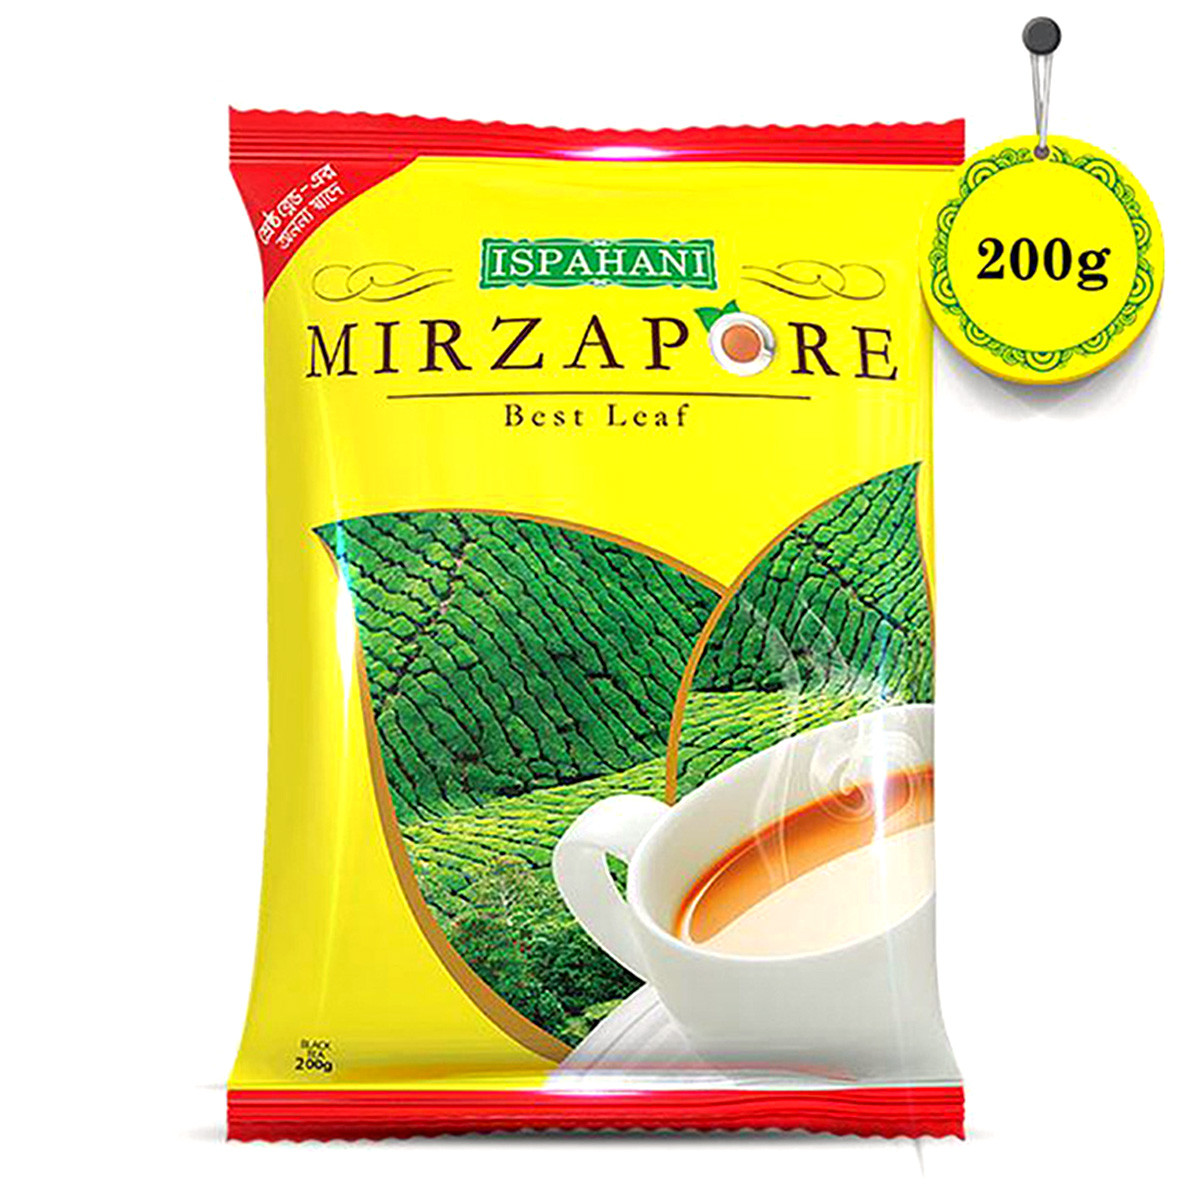 Ispahani Mirzapore Best leaf Tea